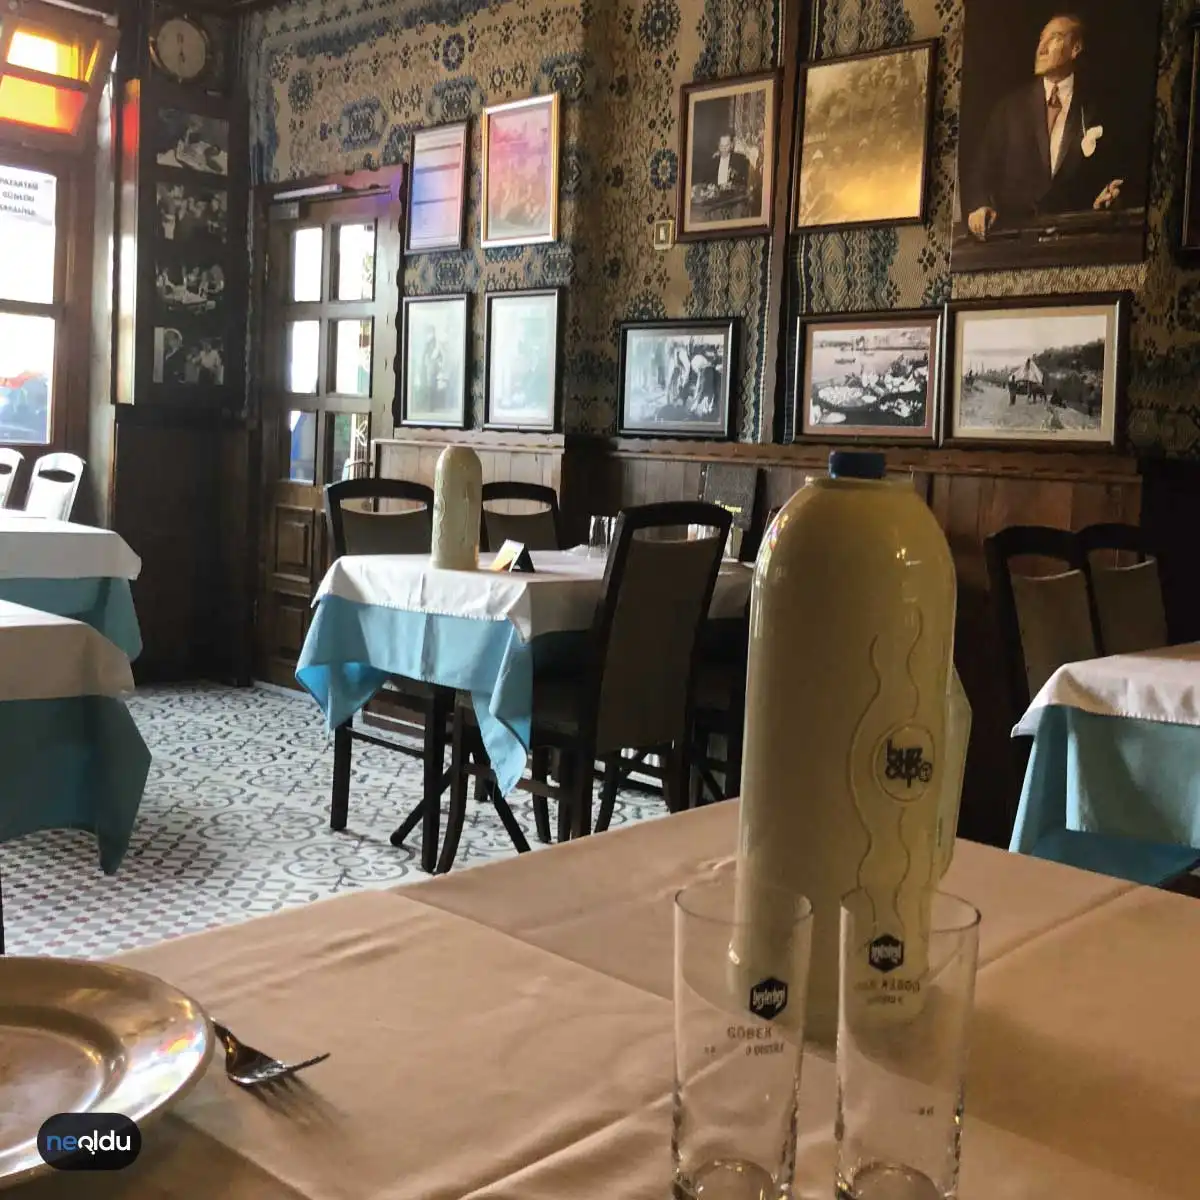 İstanbul'un En İyi Meze Restoranı